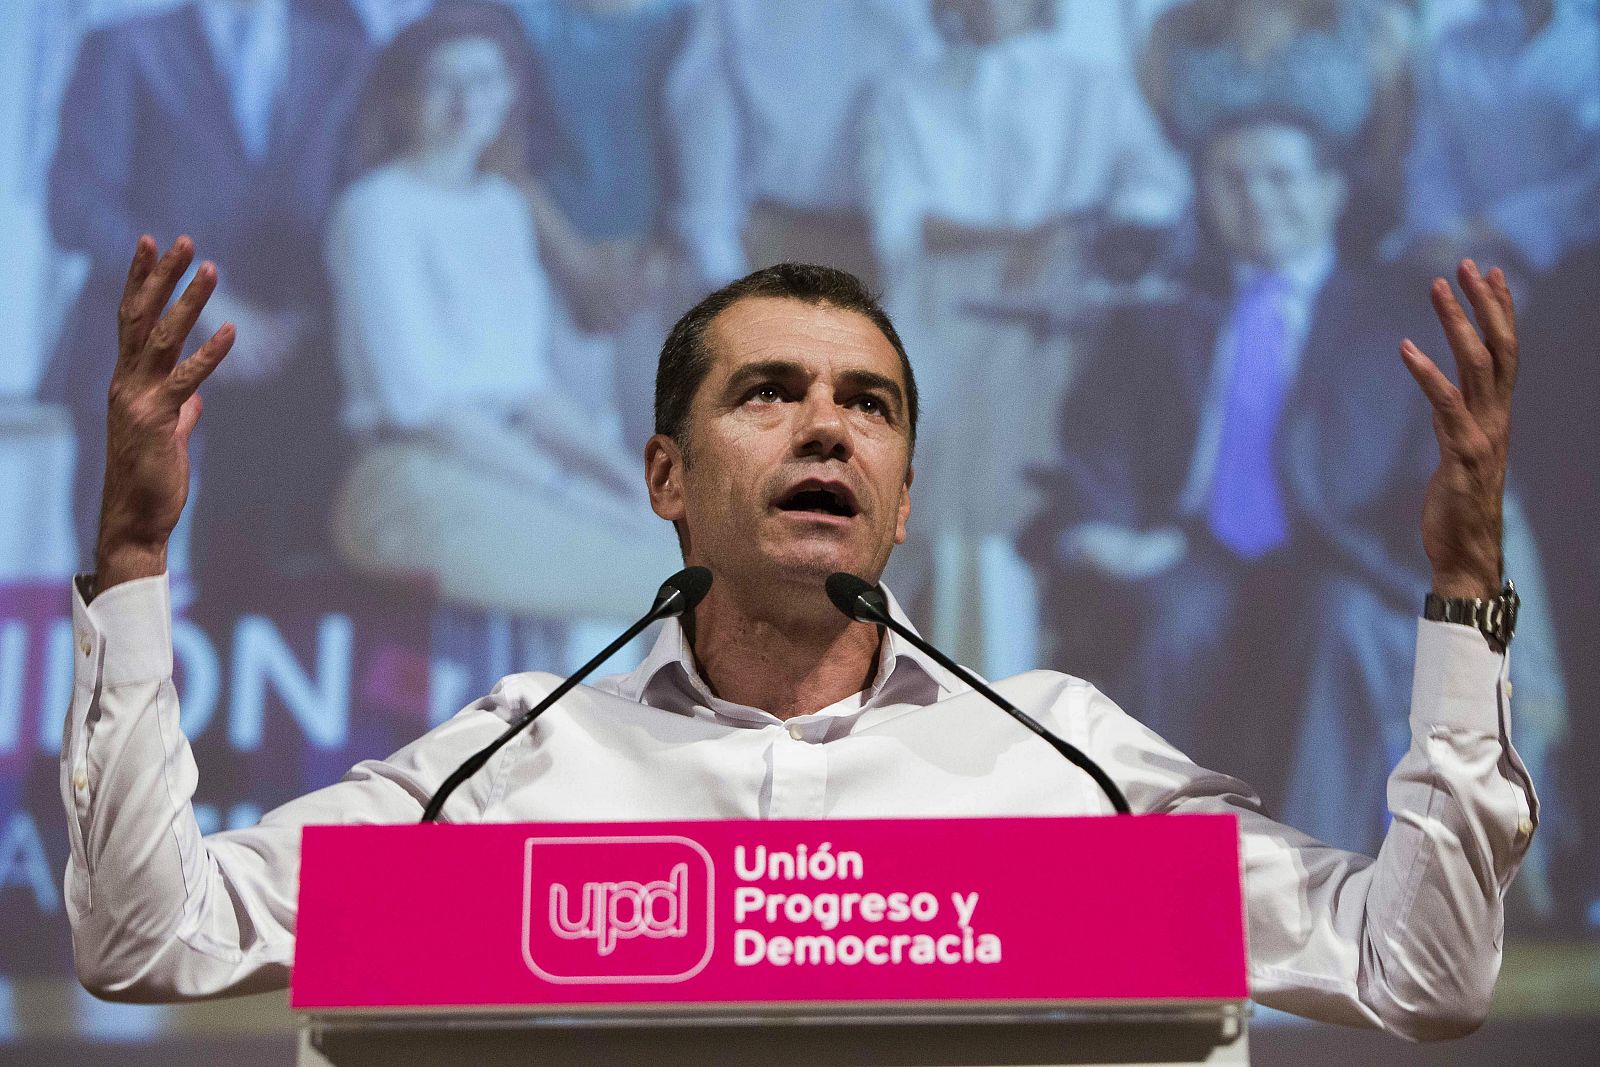 El diputado de UPyD Toni Cantó, en un mitin en Valencia en la campaña de las elecciones europeas